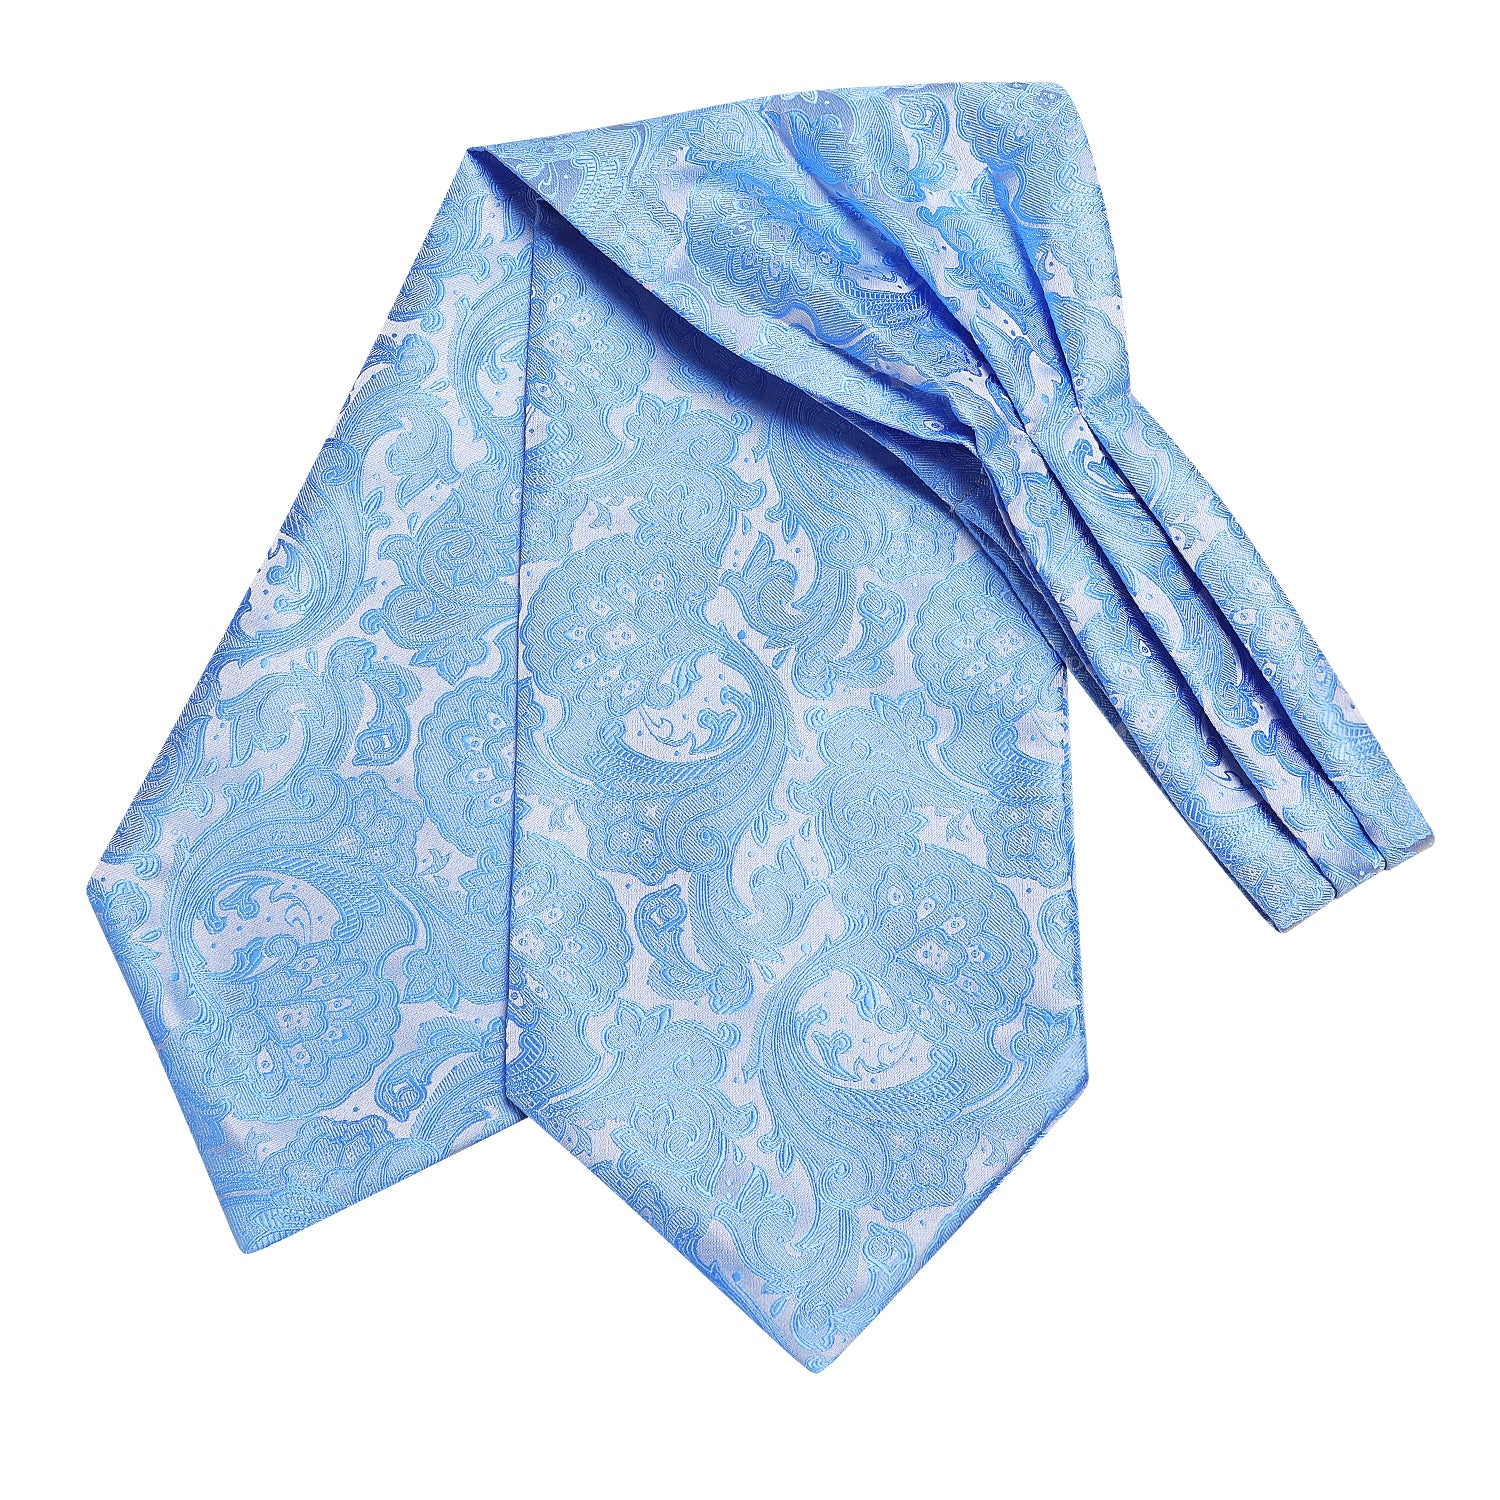 Sky Blue Floral Ascot Pocket Square Cufflinks Set